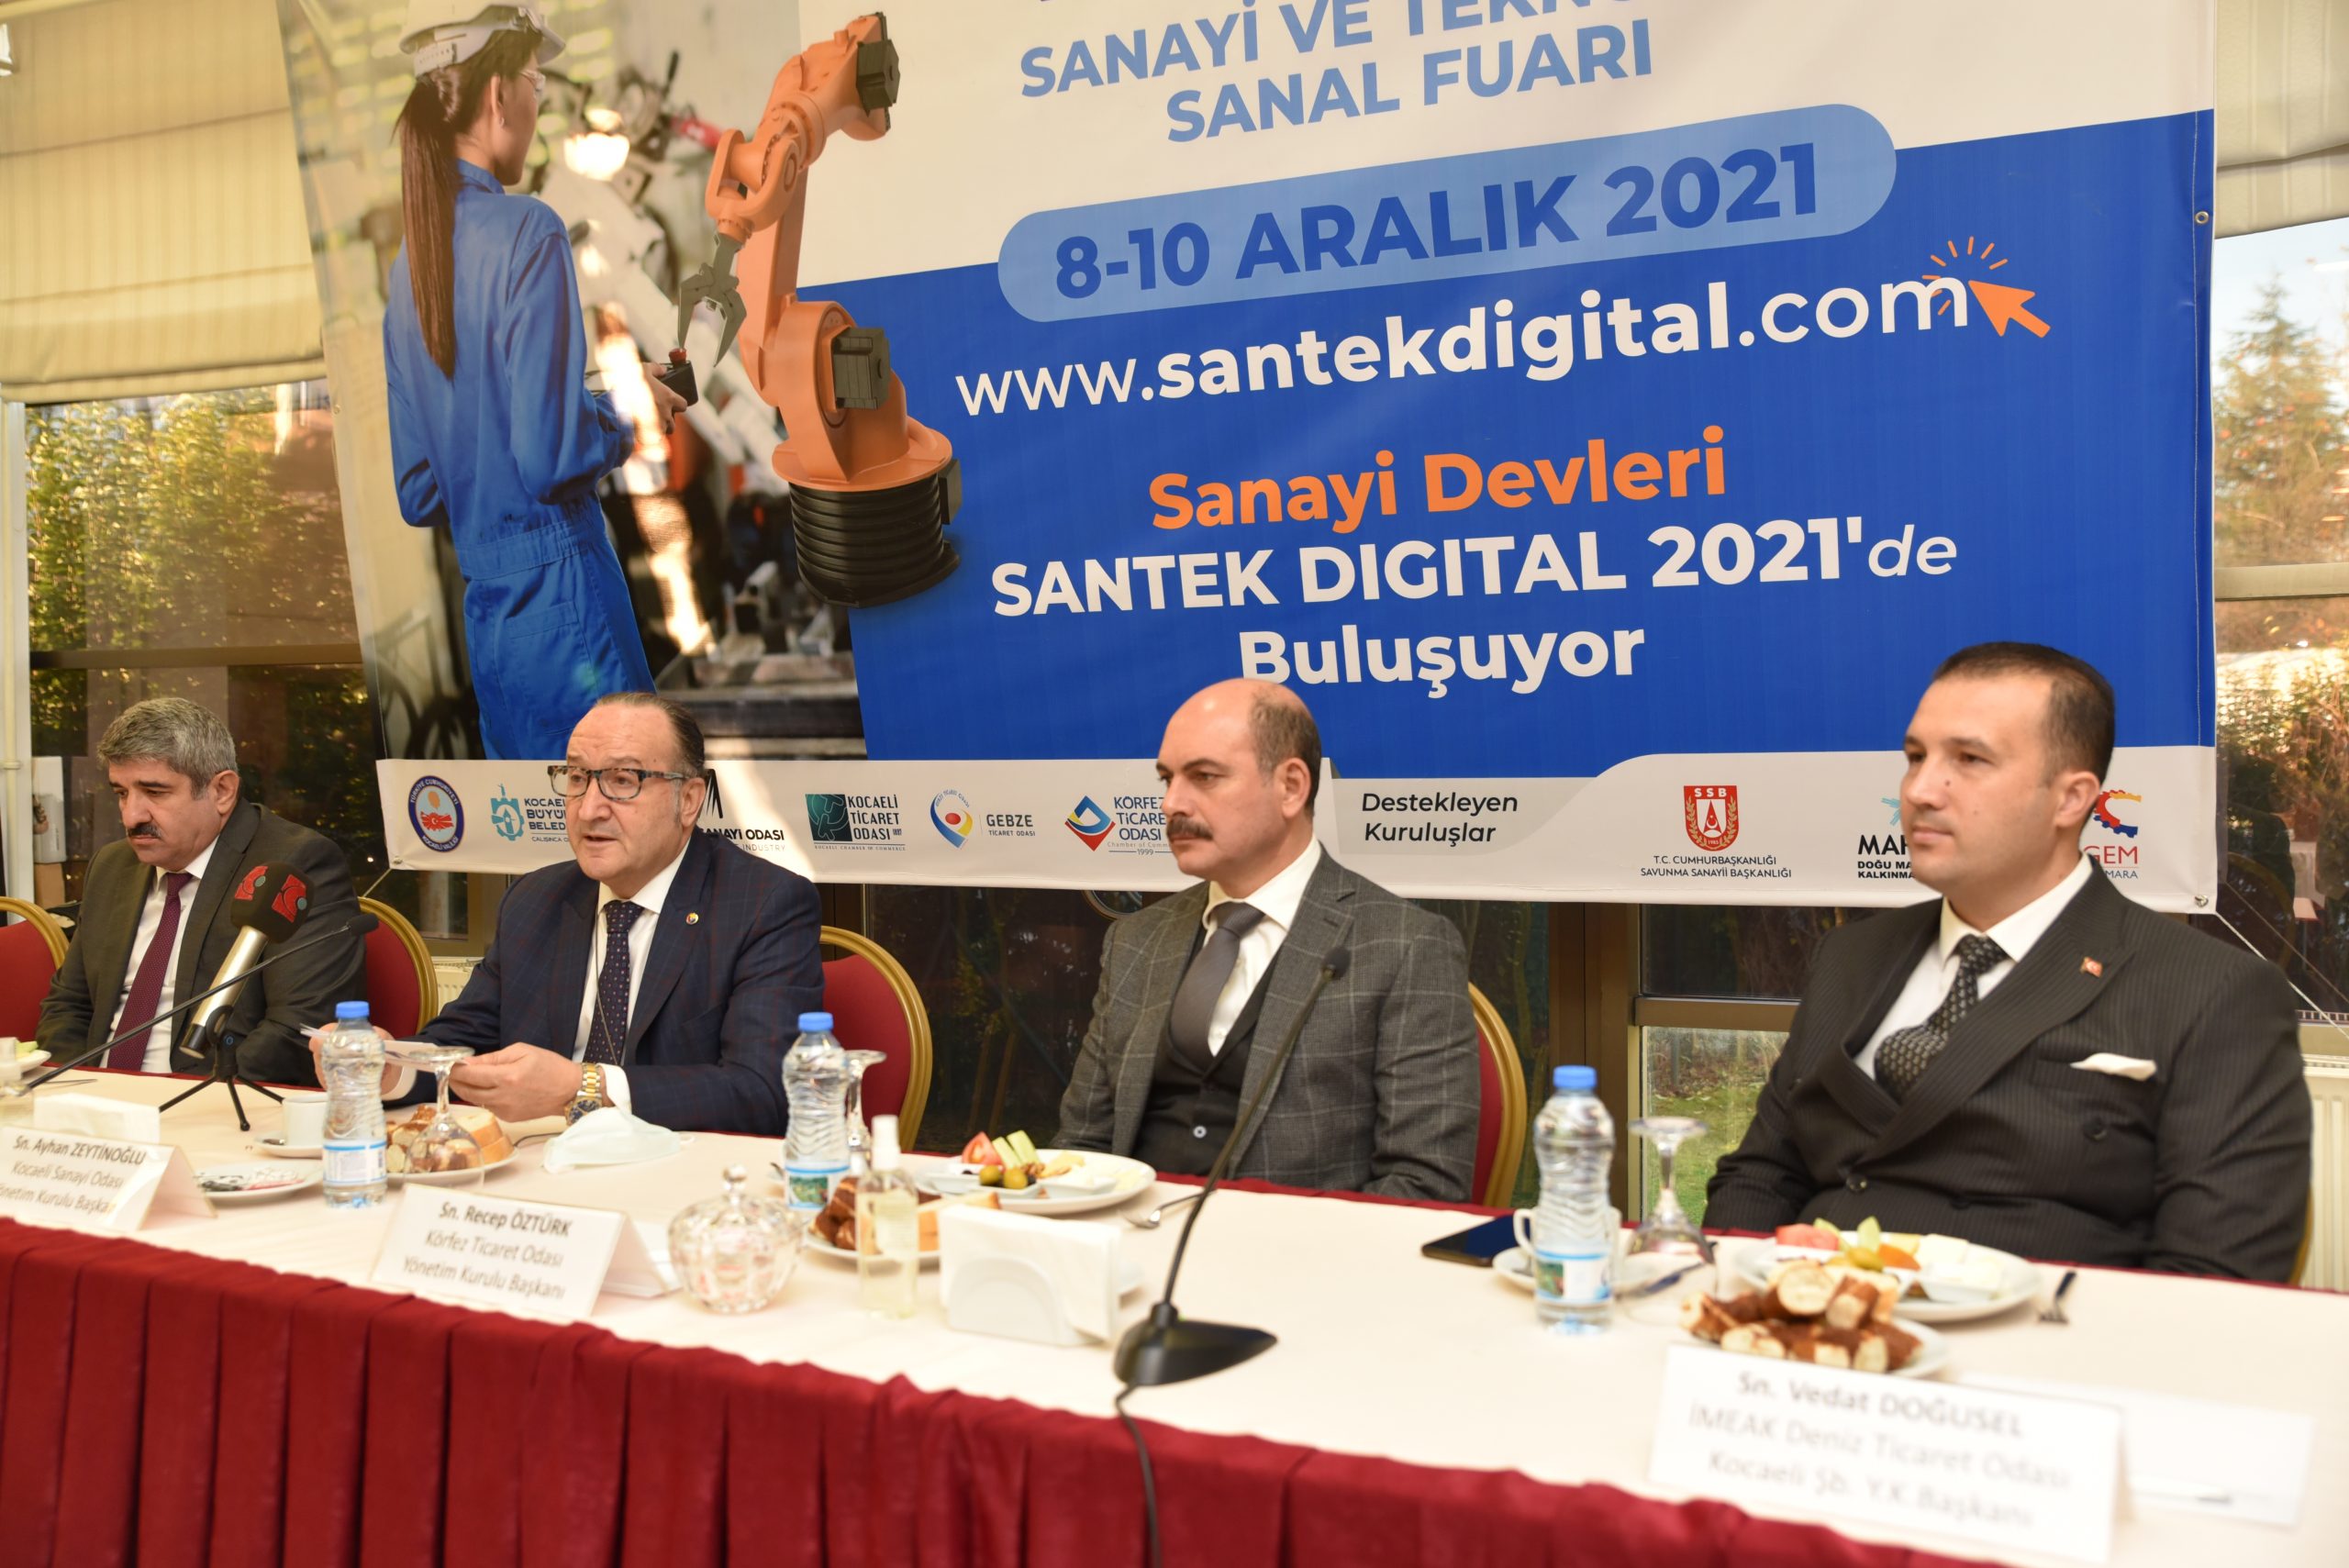 SANTEK DIGITAL 2021-SANAL FUARI tanıtıldı